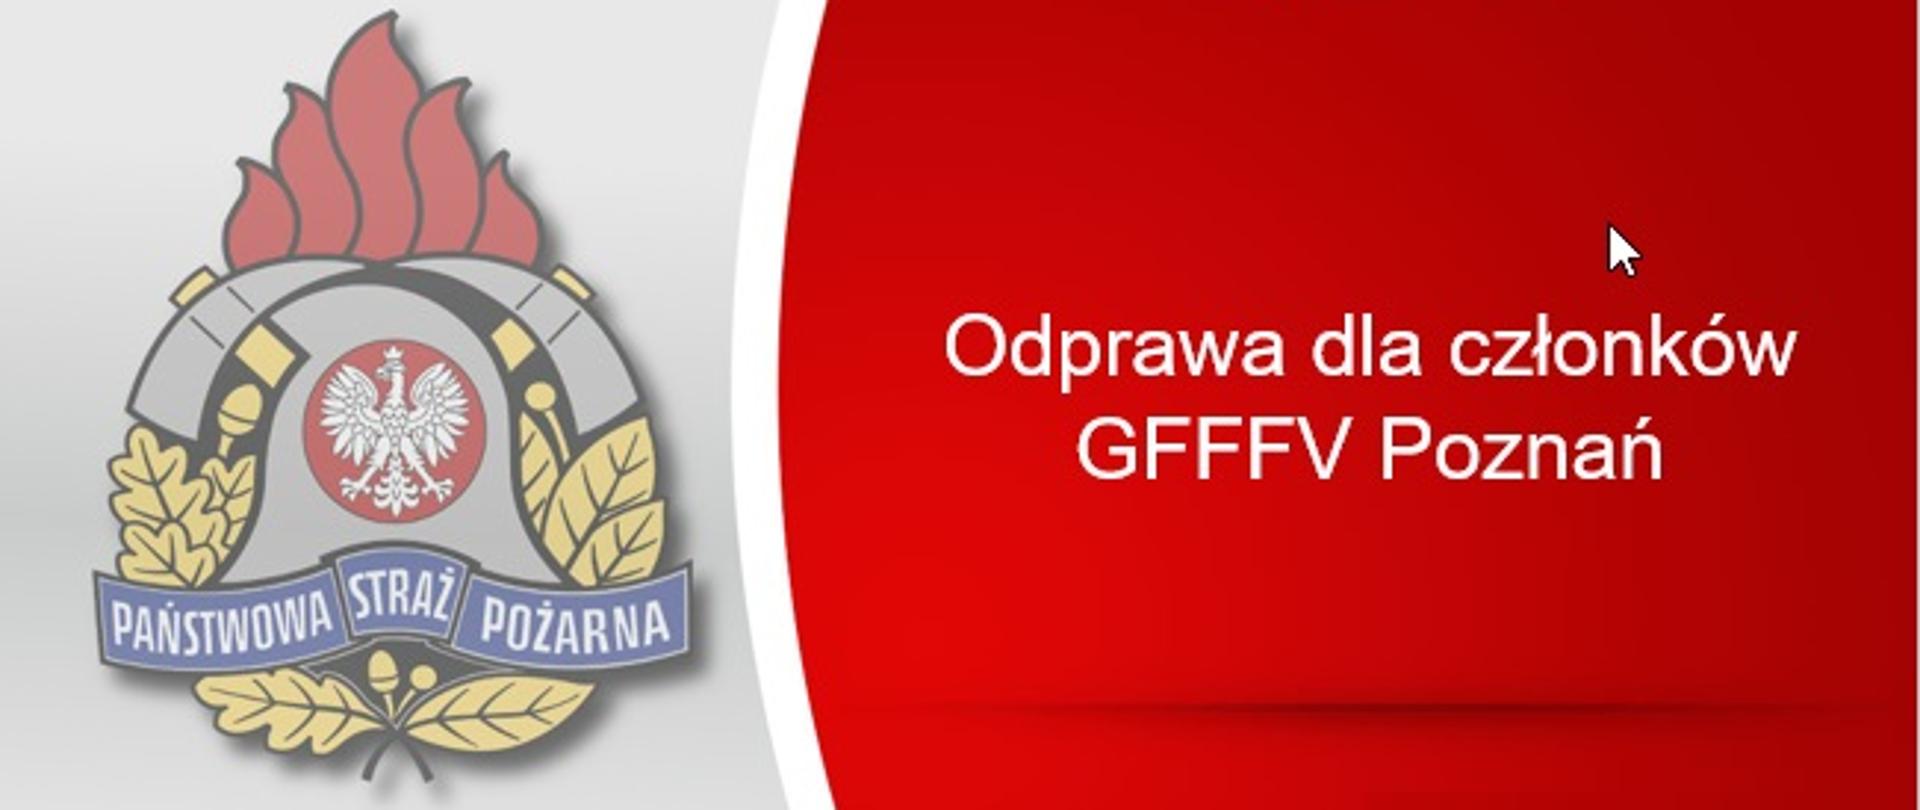 Slajd z logo państwowej straży pożarnej i tekstem: odprawa członków GFFFV Poznań